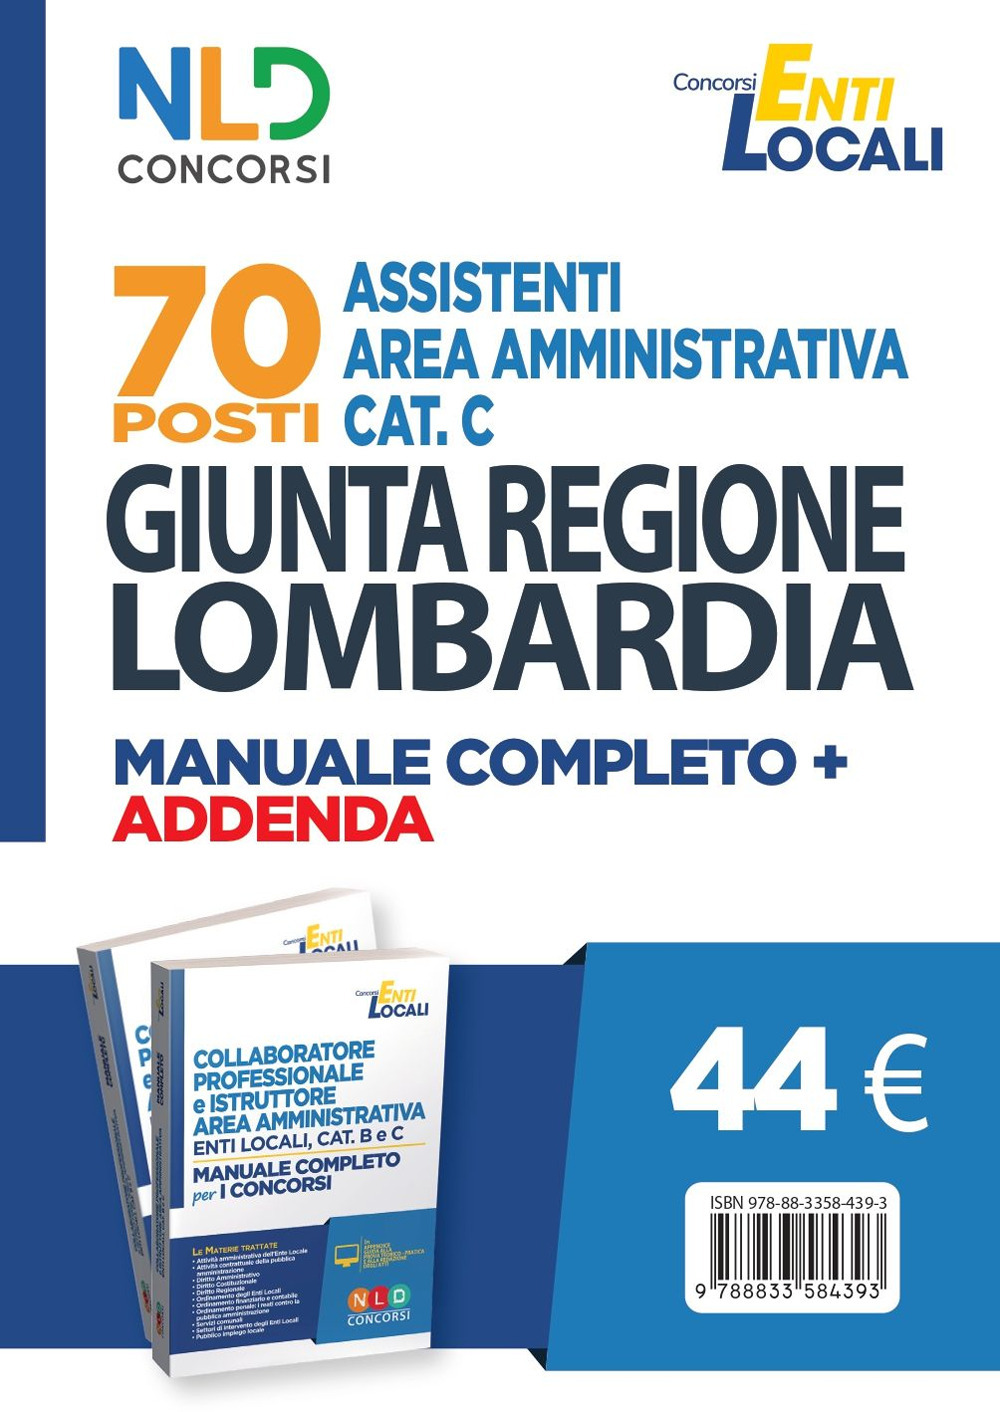 70 posti Assistenti area amministrativa Cat. C. Giunta Regione Lombardia. Manuale completo + agenda